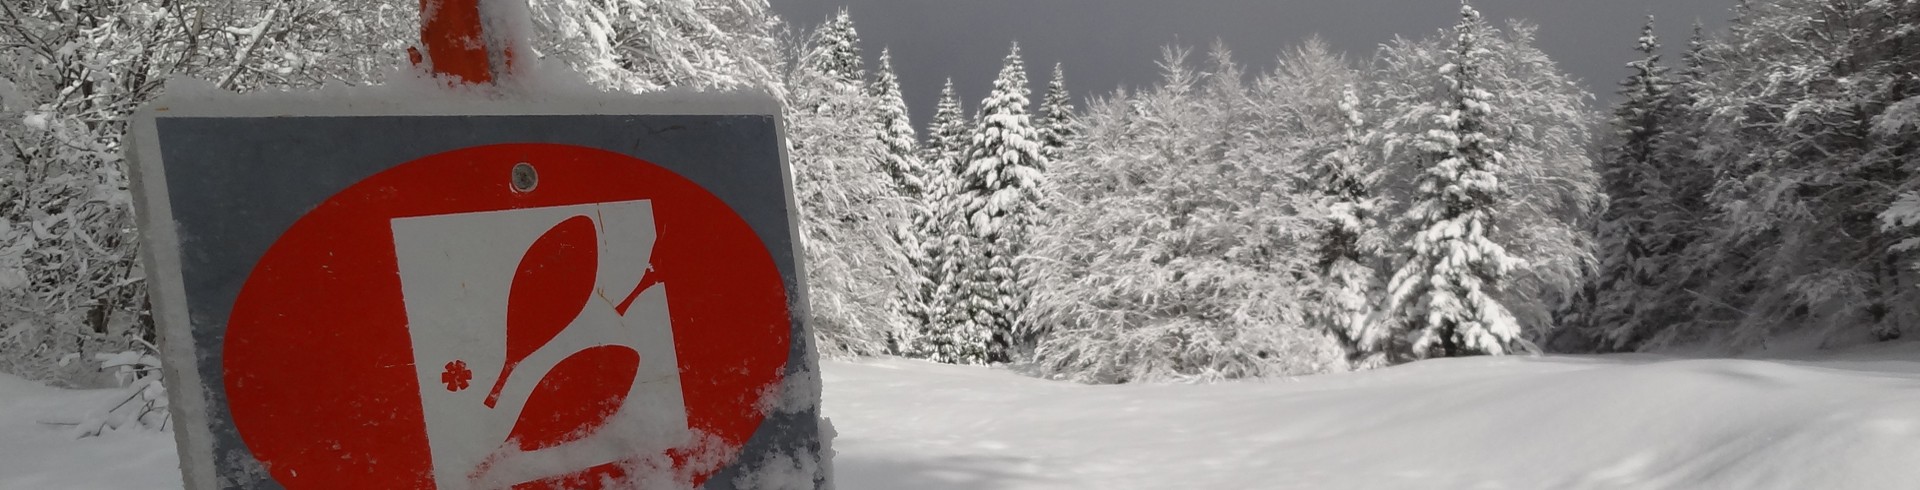 Randonnées en raquettes à neige en Chartreuse - Savoie